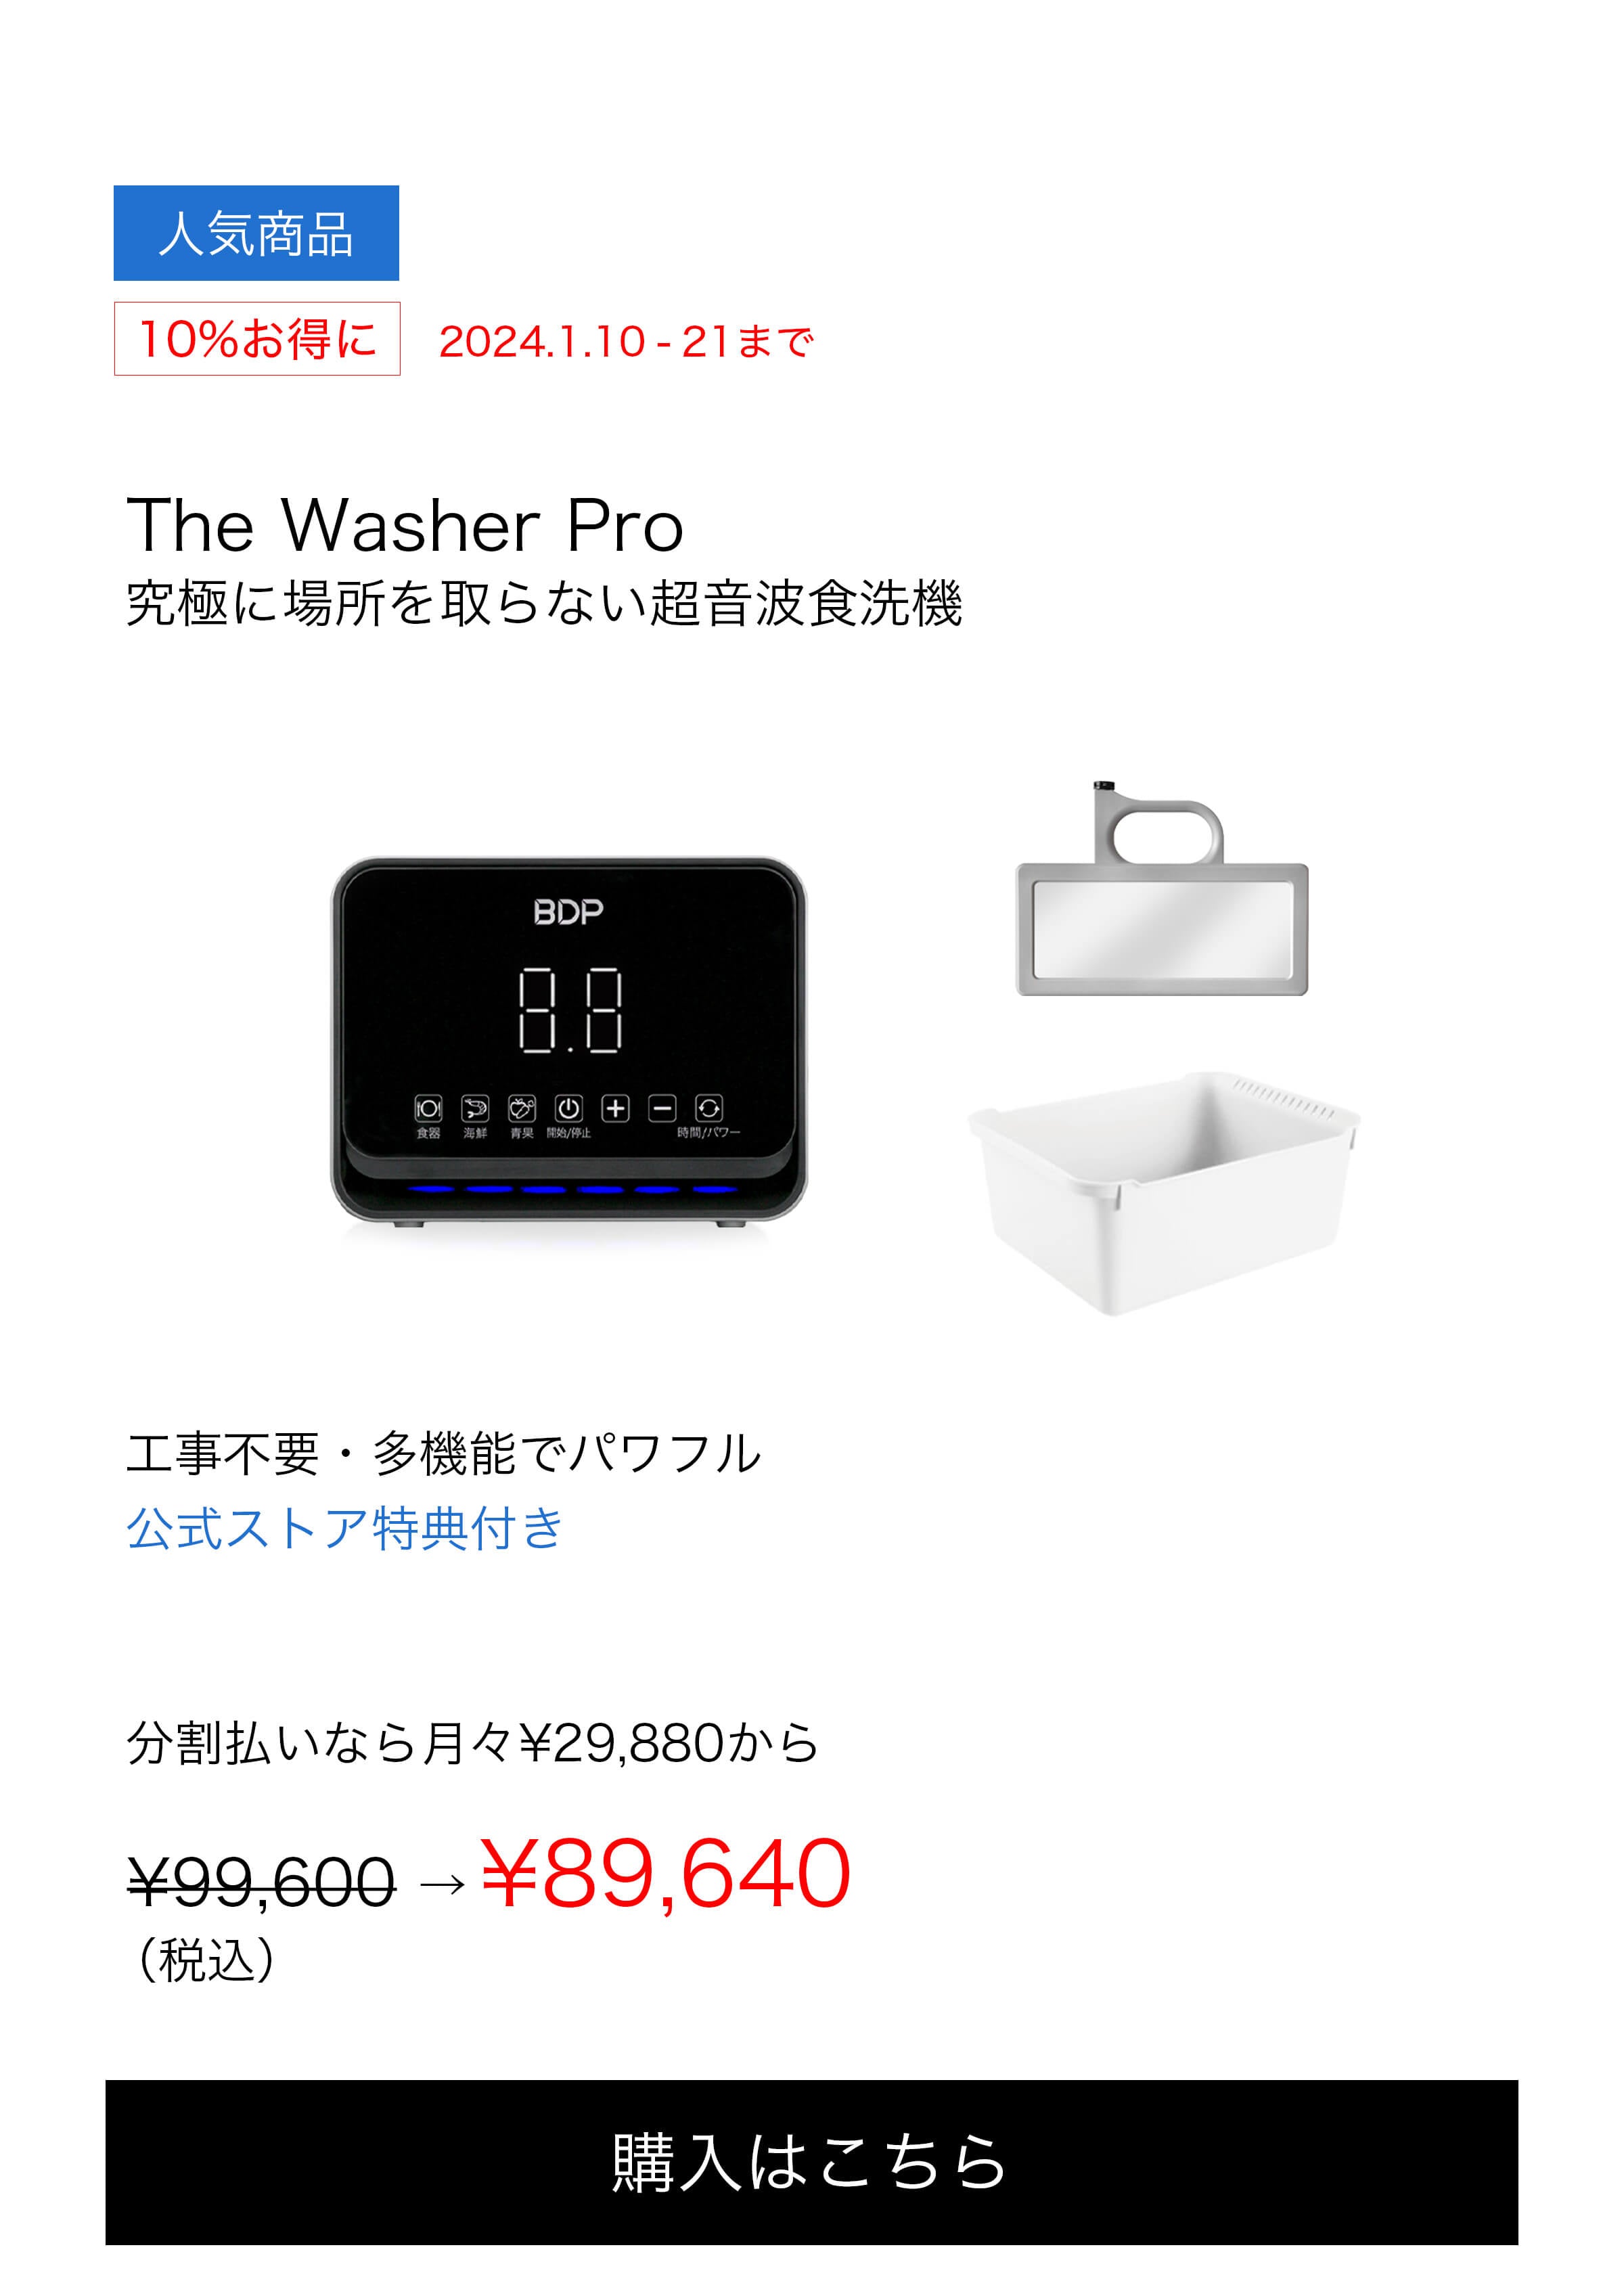 完全未使用品 The Washer Pro BDP 電磁波食洗機 - 生活家電